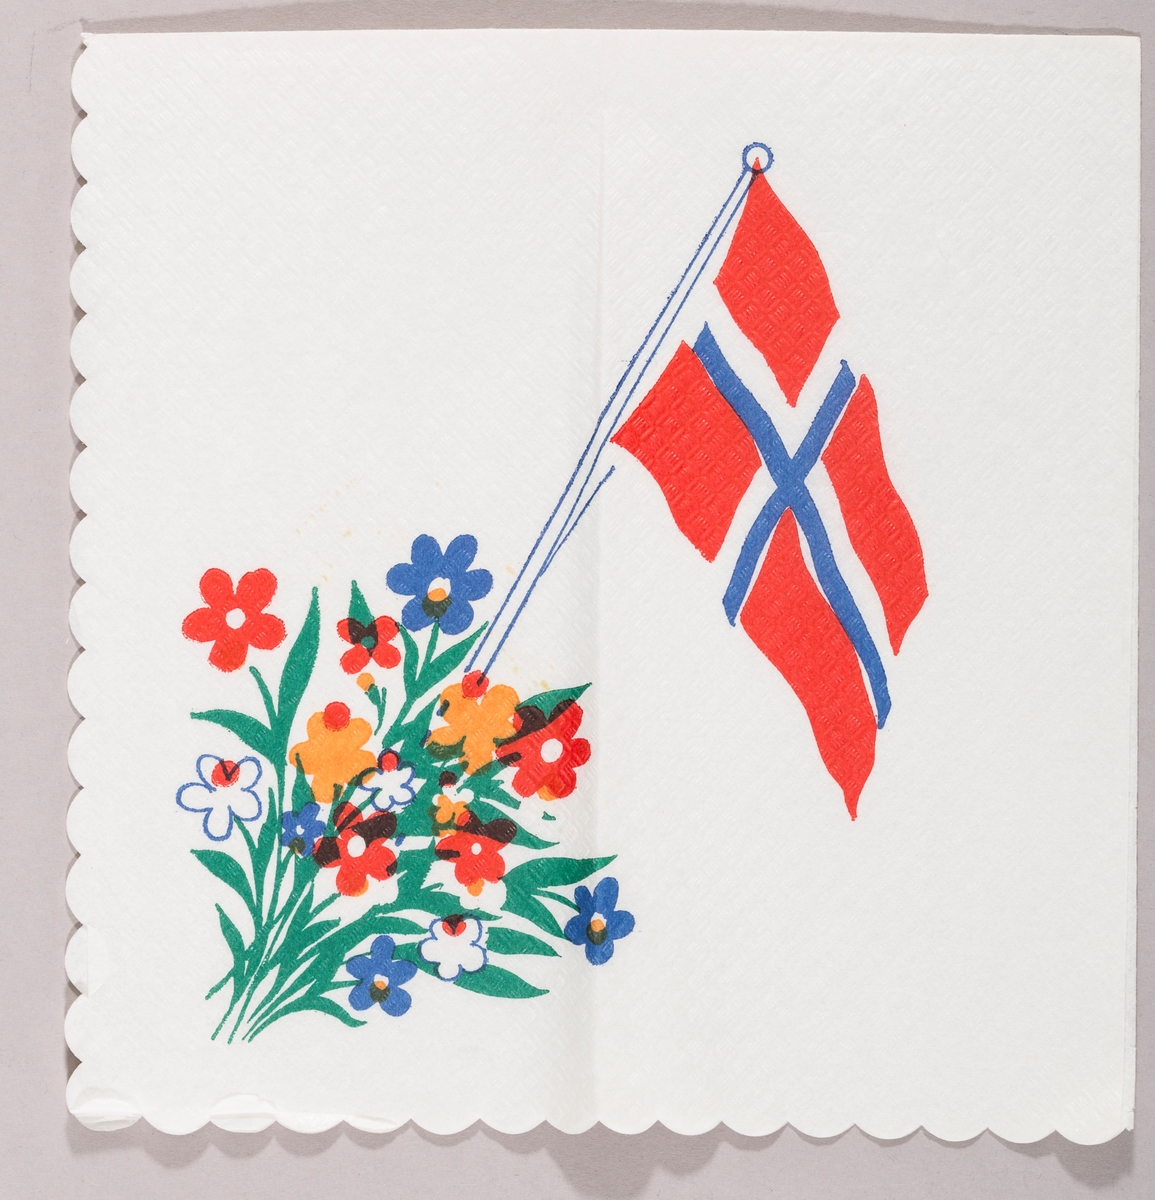 Et norsk flagg og blomster i mange farger.